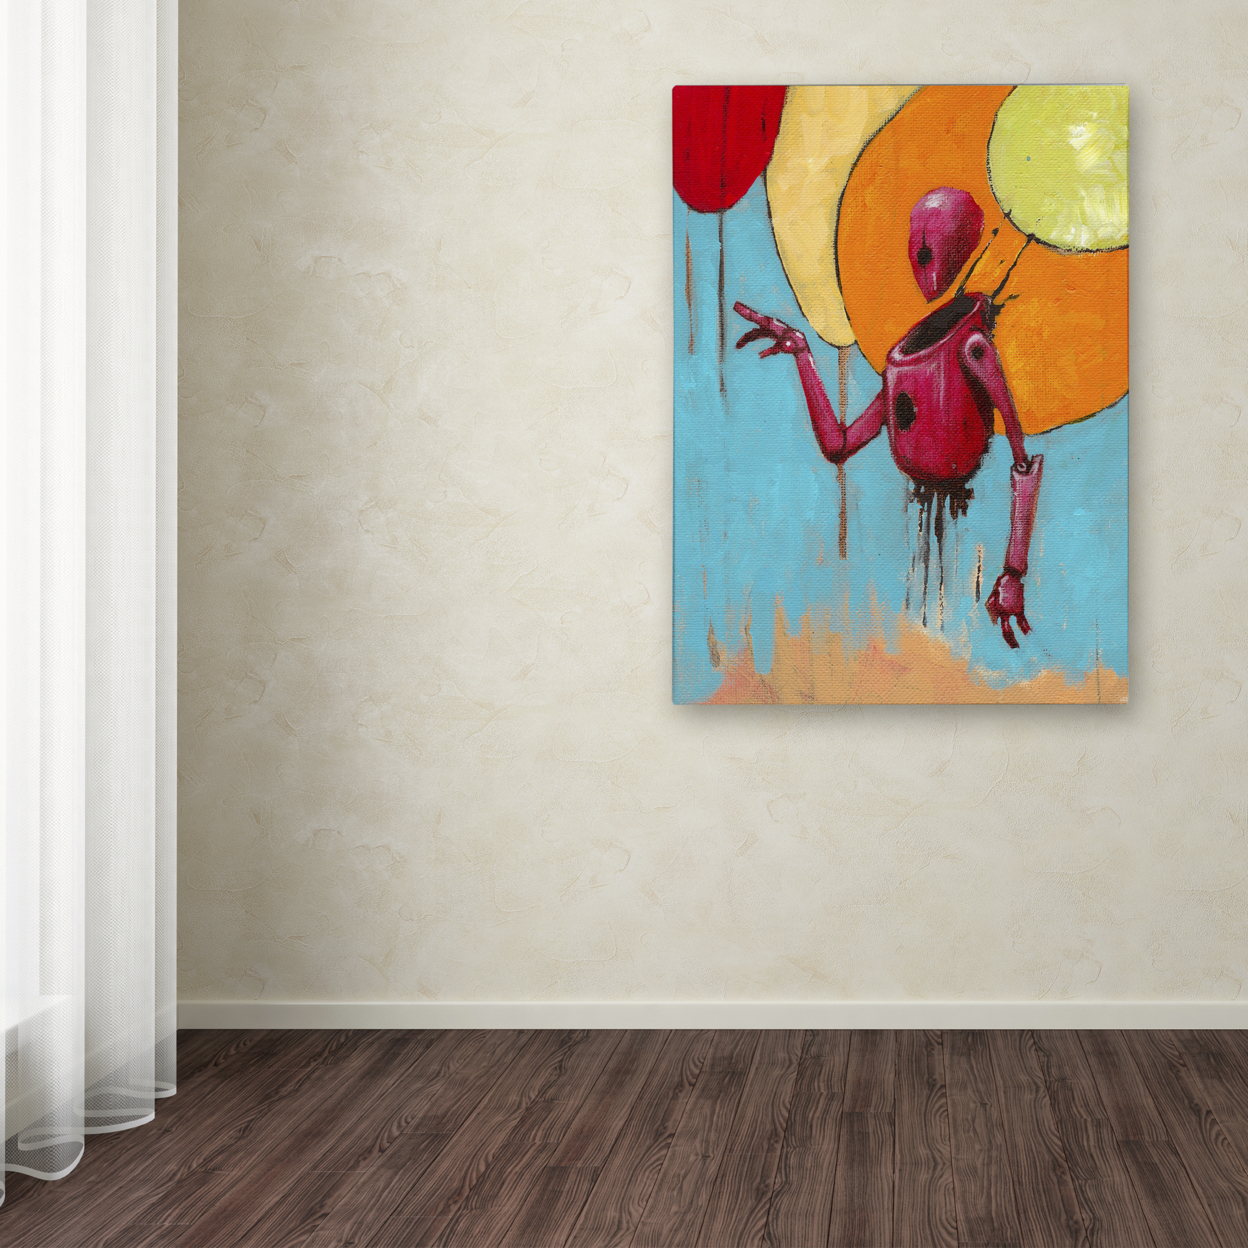 Craig Snodgrass 'Red Junk Robot' Canvas Wall Art 35 X 47 Inches